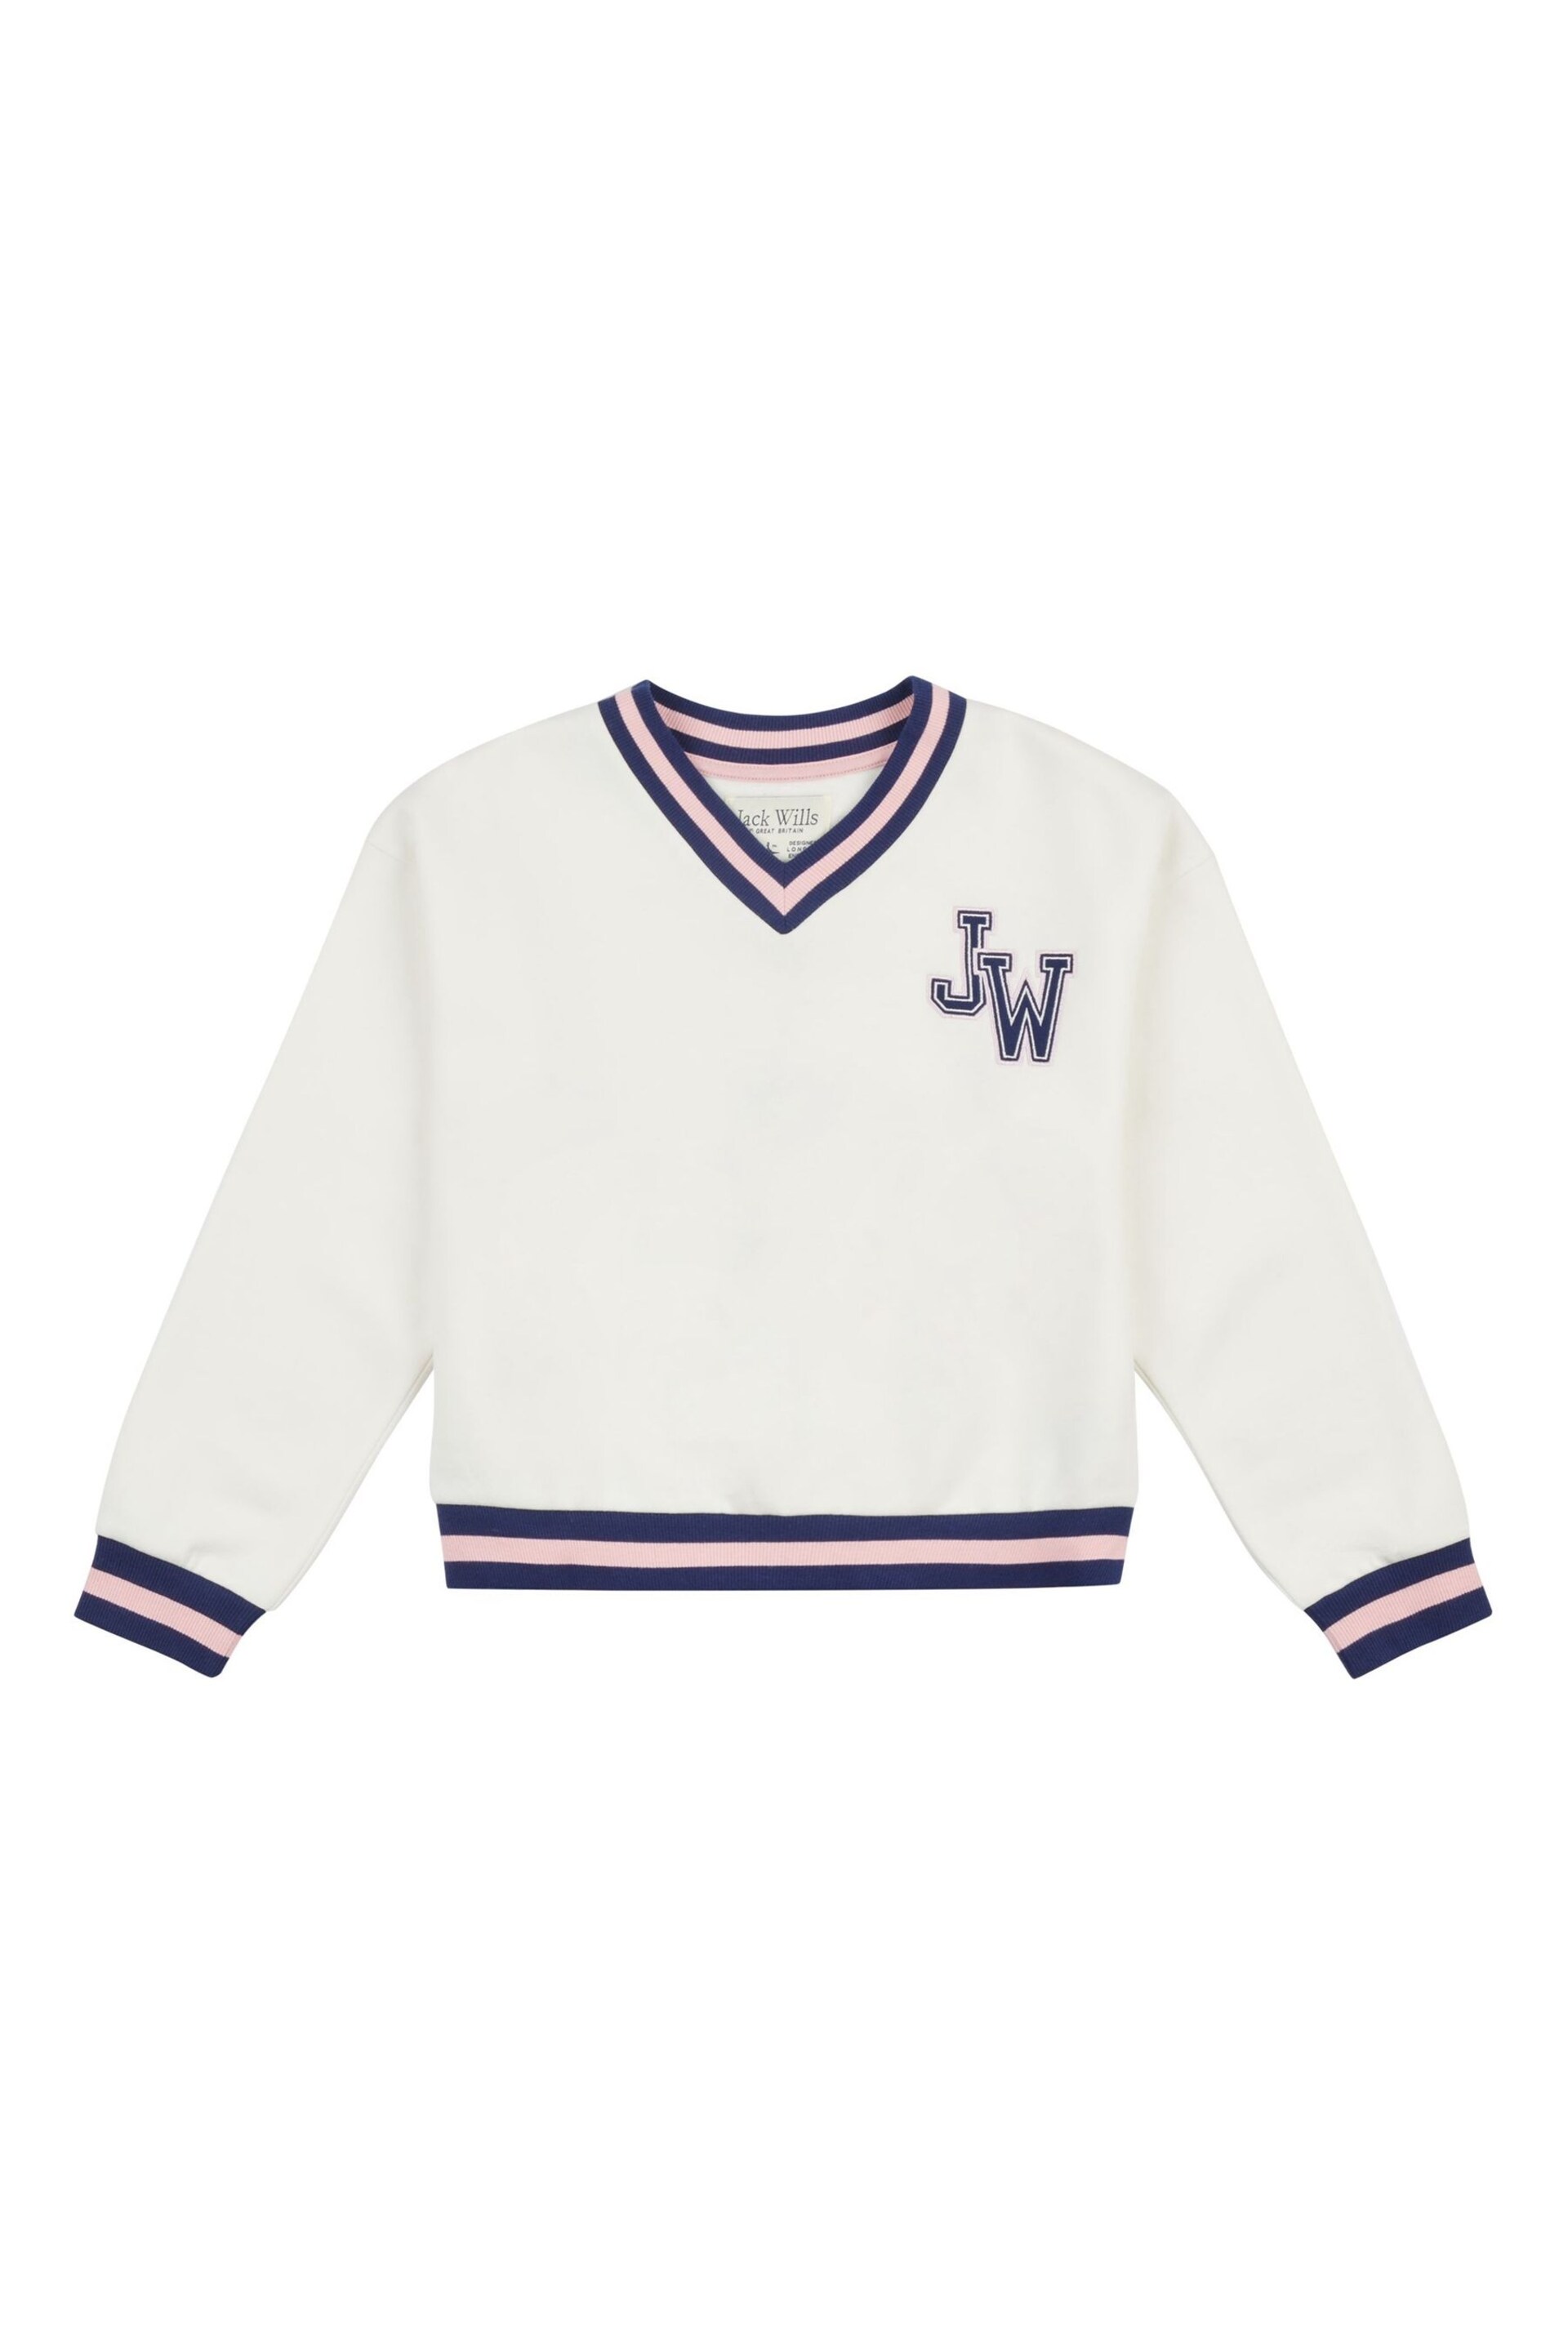 Jack Wills Oversized Cream V-Neck Varsity Sweatshirt - Image 7 of 8